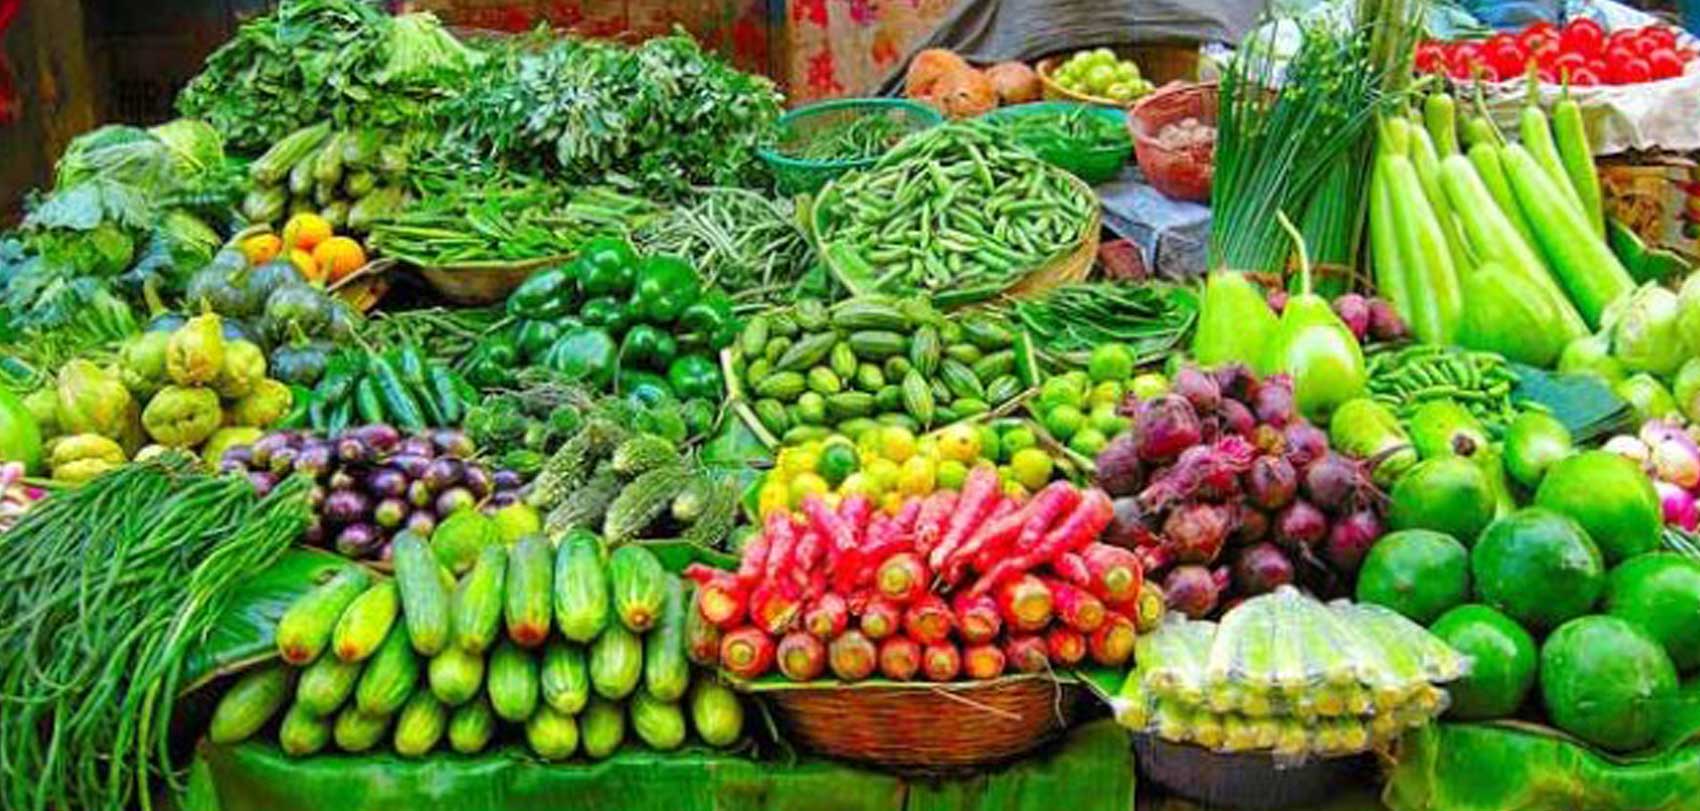 शाकाहारीको दसैँ : सागसब्जी ताजा पाउन गाह्रो, बजार महङ्गो